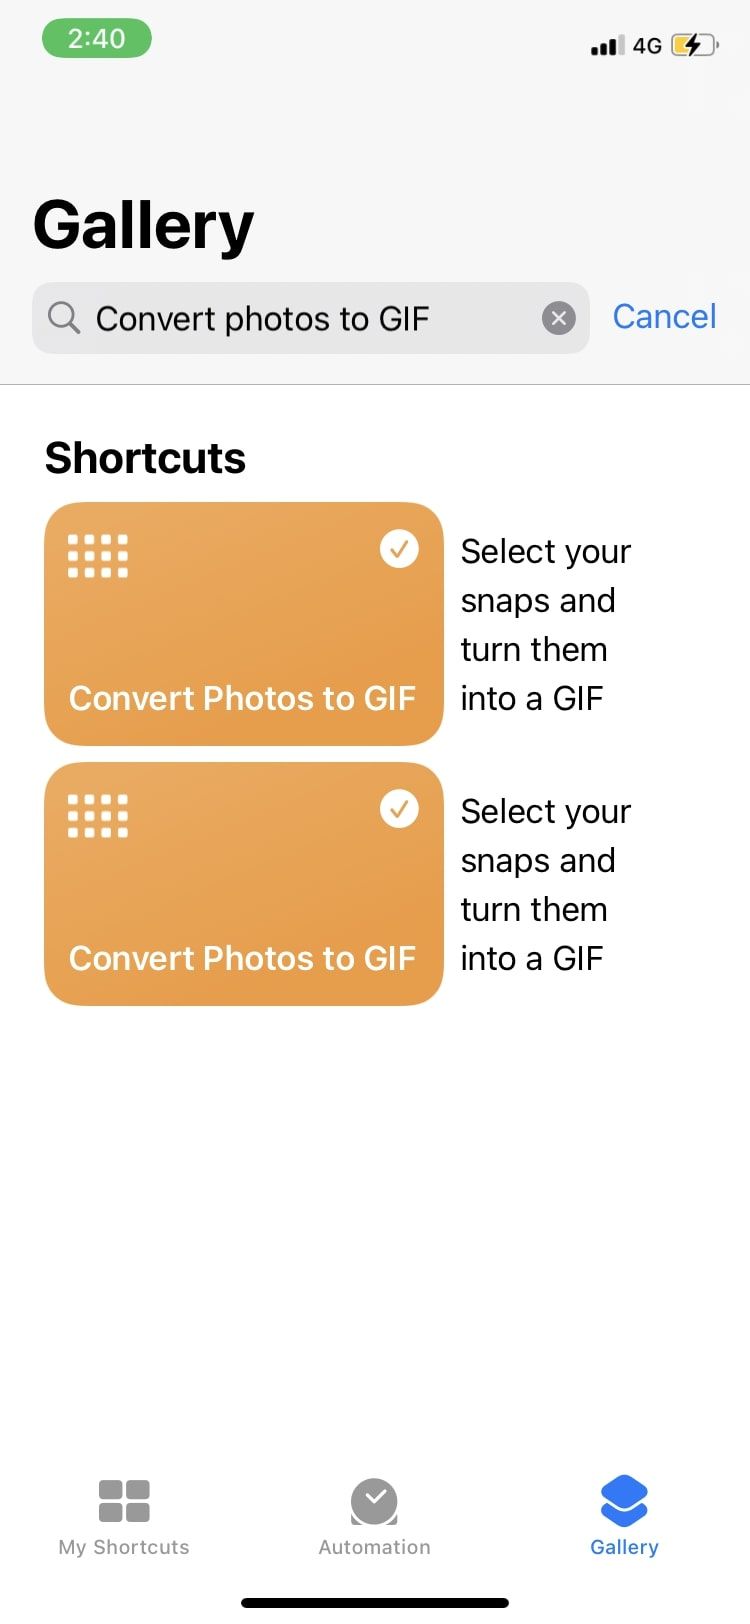 photos to GIF option